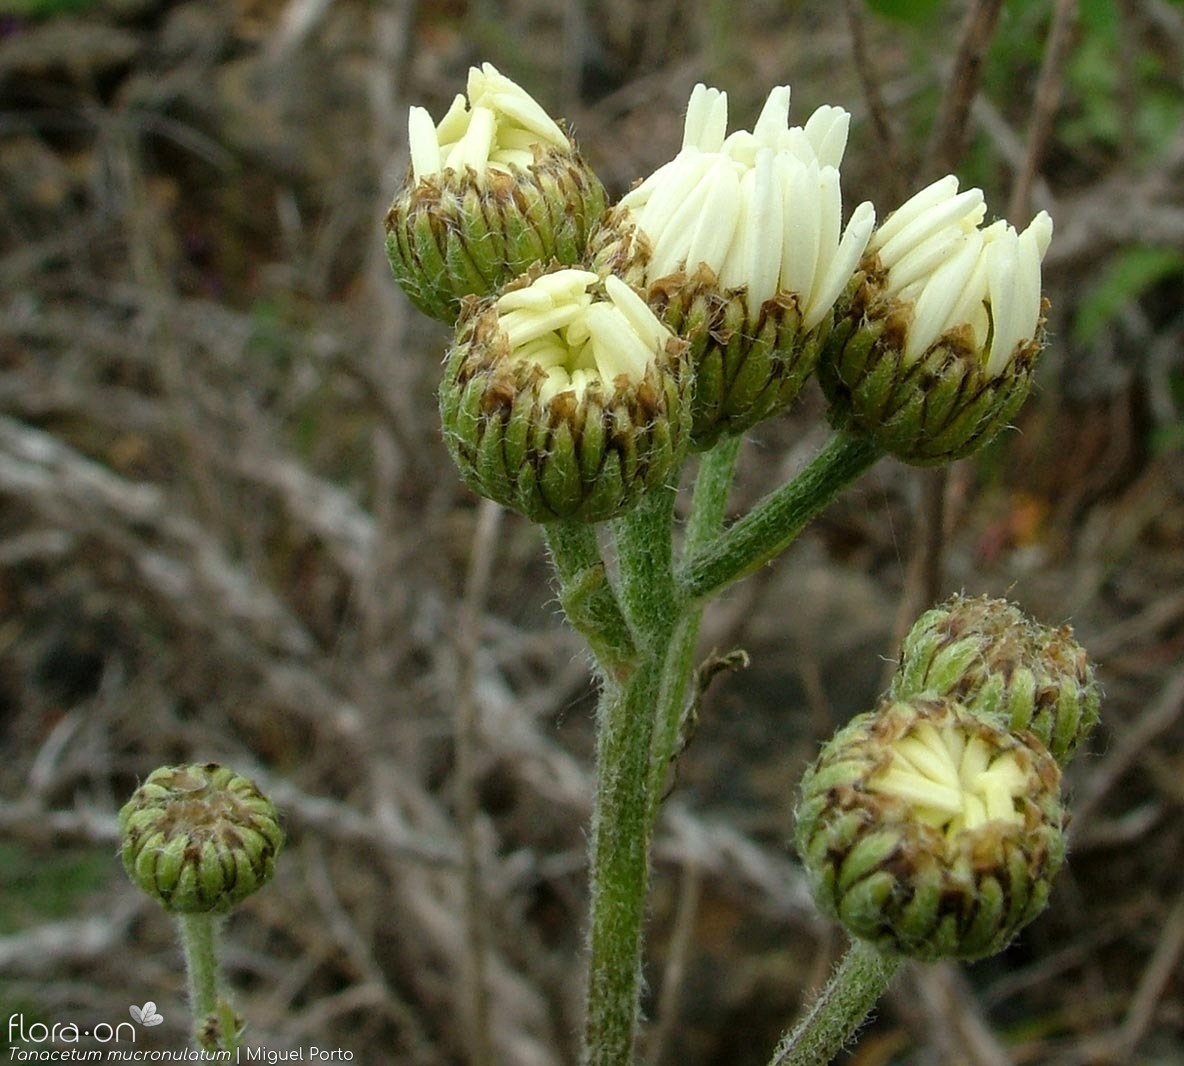 Tanacetum mucronulatum - Flor (geral) | Miguel Porto; CC BY-NC 4.0